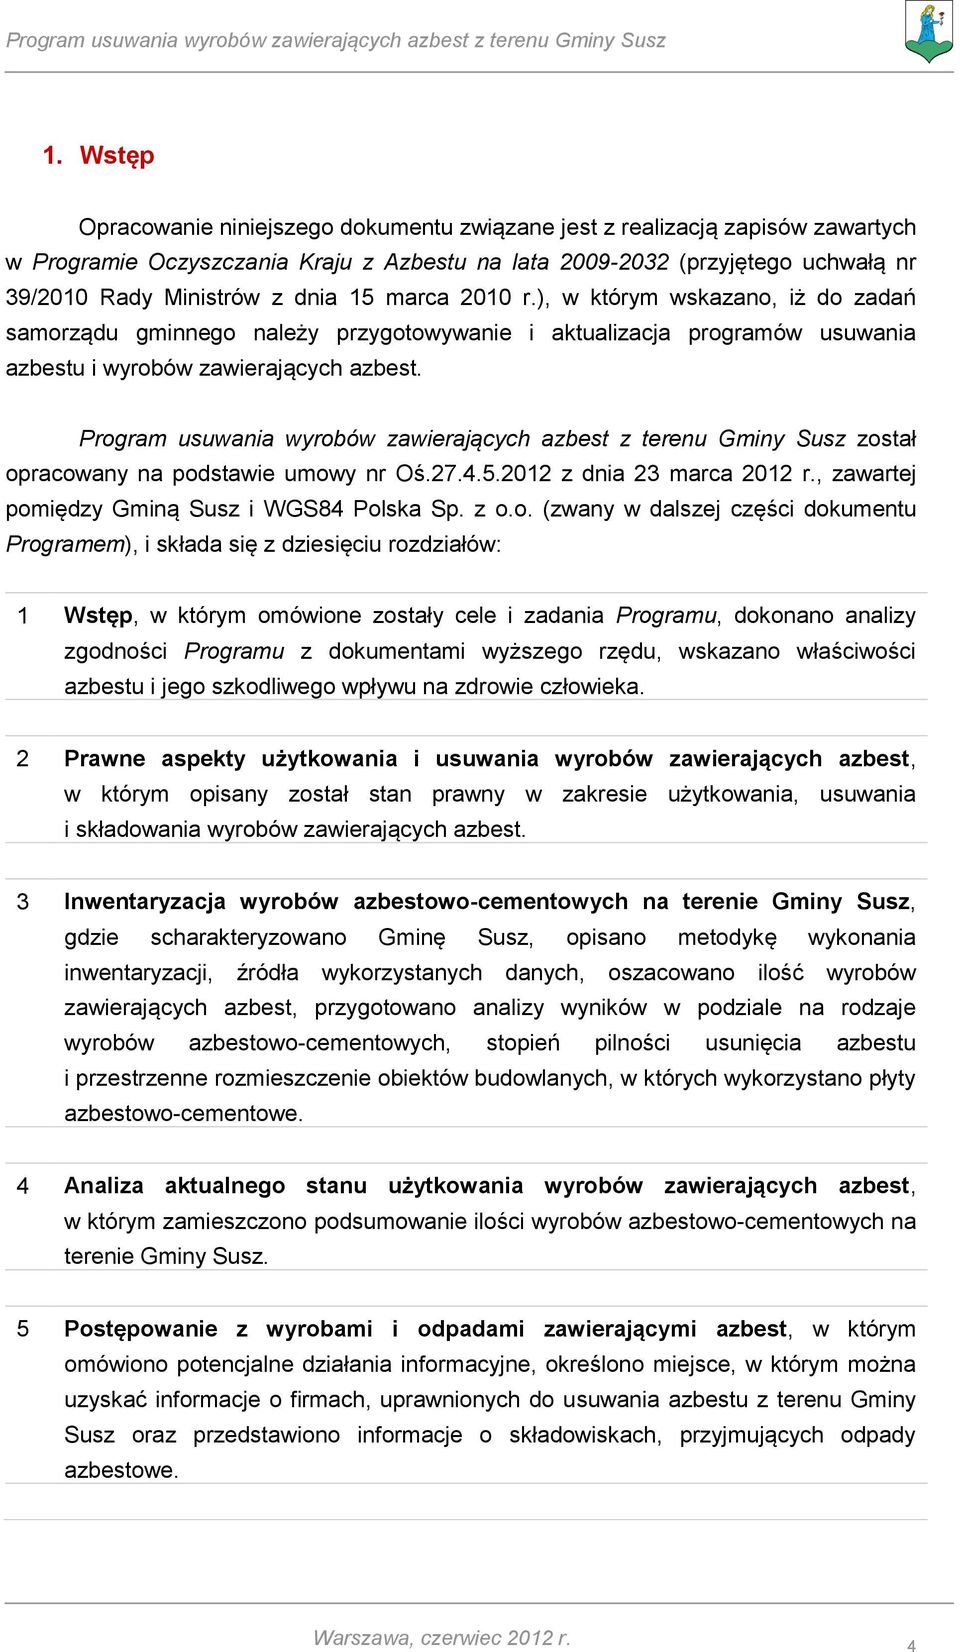 Program usuwania wyrobów zawierających azbest z terenu Gminy Susz został opracowany na podstawie umowy nr Oś.27.4.5.2012 z dnia 23 marca 2012 r., zawartej pomiędzy Gminą Susz i WGS84 Polska Sp. z